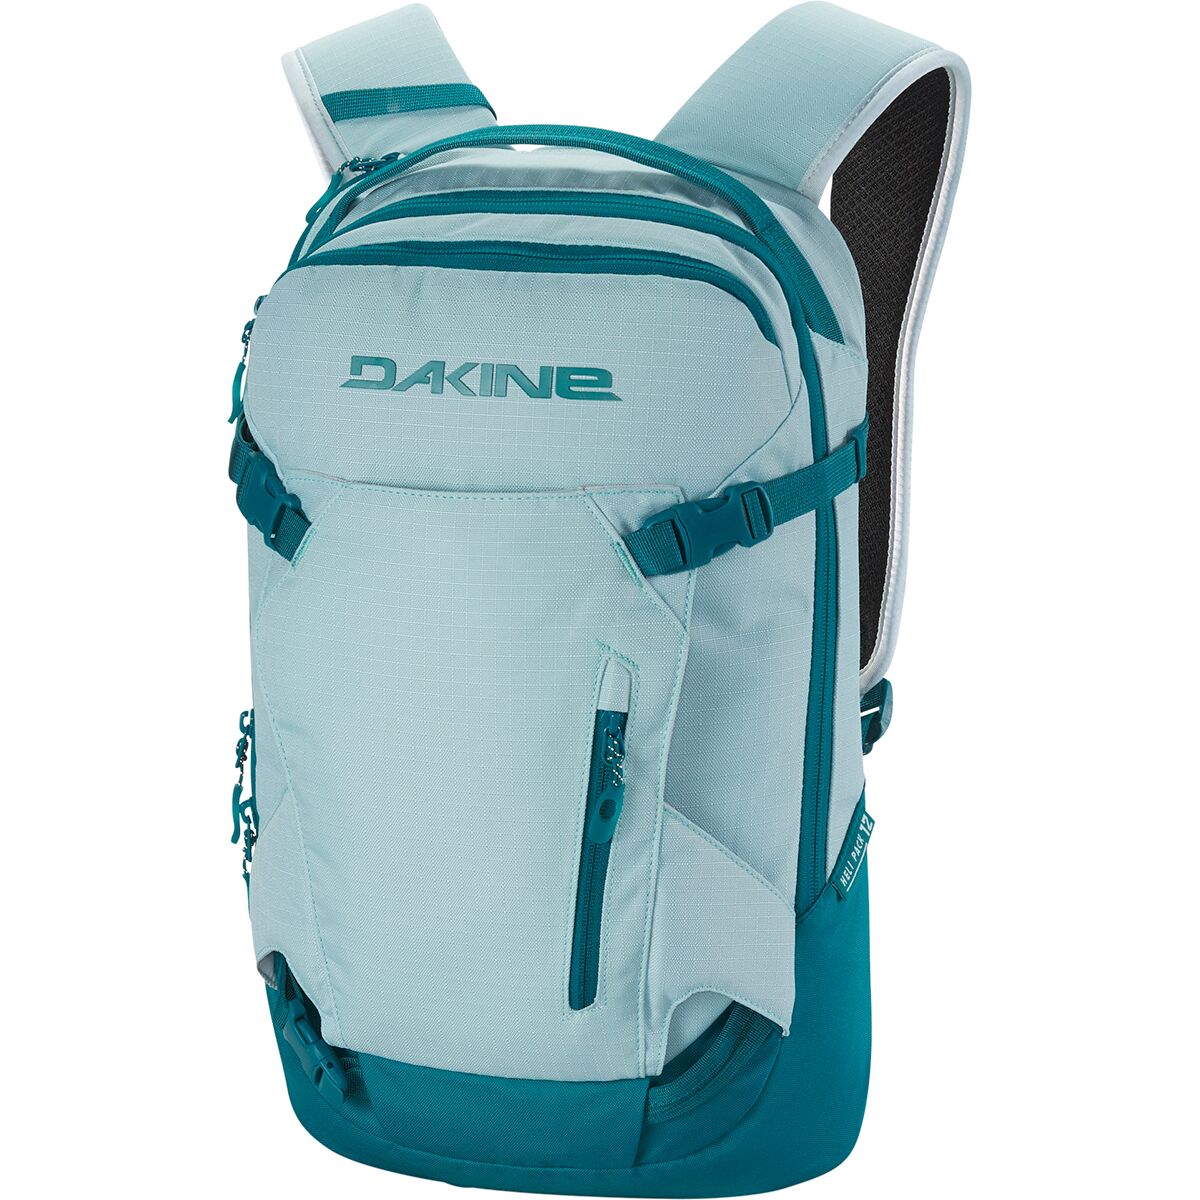 DAKINE 12L Backpack - Women's - Hike & Camp